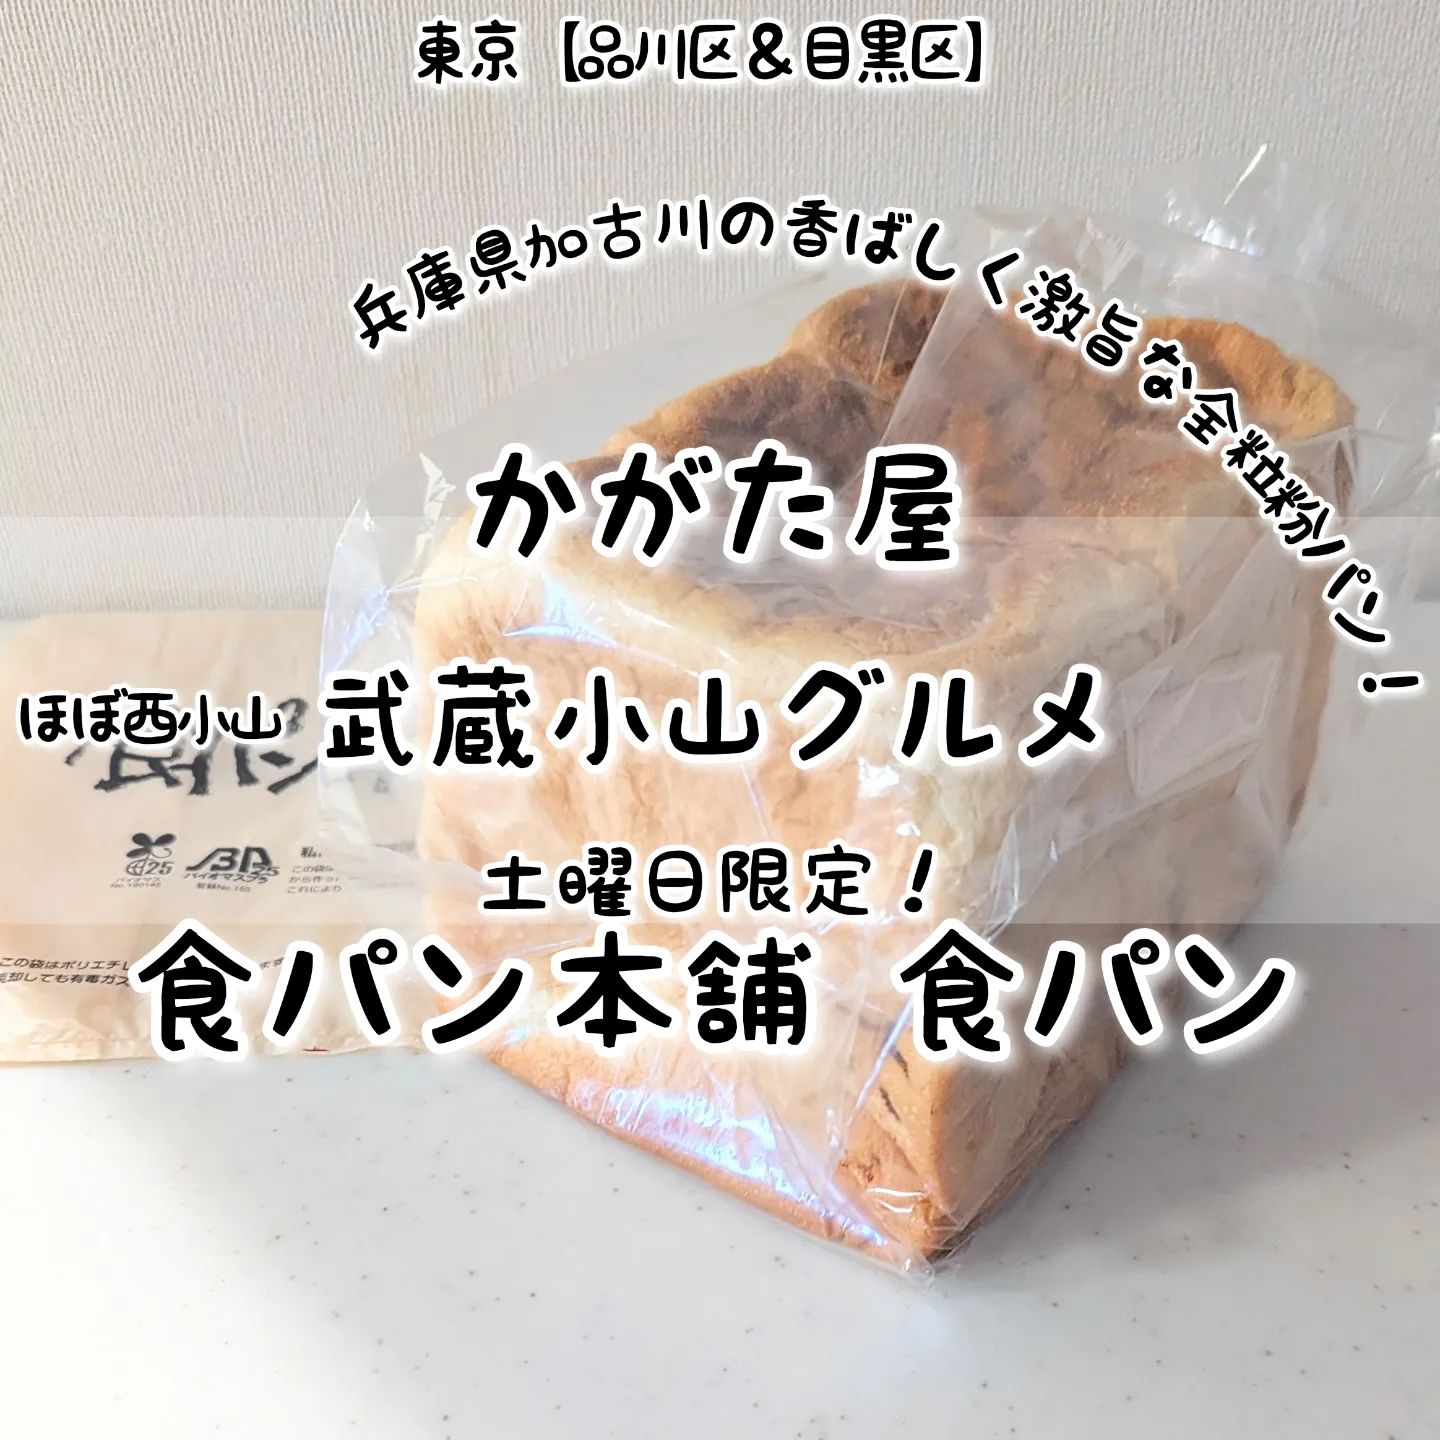 #武蔵小山グルメ情報 #かがた屋 #食パン本舗 あっさり系－－☆－－こってり系オールド系－－☆－－ニュー系おもいで度－－☆－－ #侍猫度 土曜日限定で買える全粒粉の食パンが美味しい！毎週土曜日にかがた屋で限定販売される、兵庫県加古川の食パン専門のこだわりの食パンとなっておりまして、全粒粉の香ばしくフワフワ食感でパンの耳まで柔らかな贅沢仕上がりとなっております！場所は、武蔵小山駅からパルム商店街を西小山方面へ行きまして、アーケードを抜けてずっと進み坂を下ると左手側にございます。西小山サミットの手前でございますね。【侍猫へ連絡】気になるお店やグルメ情報などなどお気軽にメッセージください！もちろん試食のお誘いやお仕事のご依頼も受付ております！【侍猫を応援】「フォロー」＆「いいね」＆「保存」どうぞよろしくお願いします！【侍猫に投げ銭】ご飯代の投げ銭(寄付)お願いいたします！投げ銭いただきますと侍猫がもっと武蔵小山で食べ歩きます！→https://doneru.jp/samuraicat→ @musashikoyama.news ※寄付サイトへの移動はプロフィールのURLが簡単！【侍猫をクリック応援】メインサイトをクリックしていろいろ見ていただくと侍猫のモチベーションが上がります！→ https://musashikoyama.samuraicat.jp/ → @musashikoyama.news ※メインサイトへの移動はプロフィールのURLが簡単！ #武蔵小山 #武蔵小山グルメ #西小山 #戸越銀座 #不動前 #碑文谷 #戸越 #中延 #荏原中延 #目黒本町 #下目黒 #品川区 #品川区グルメ #目黒区 #目黒区グルメ #東京グルメ #東京散歩 #東京観光 #東京デート #東京旅行  #tokyotrip #tokyo #japanesefood #japantravel #武蔵小山パン屋 #東京パン屋